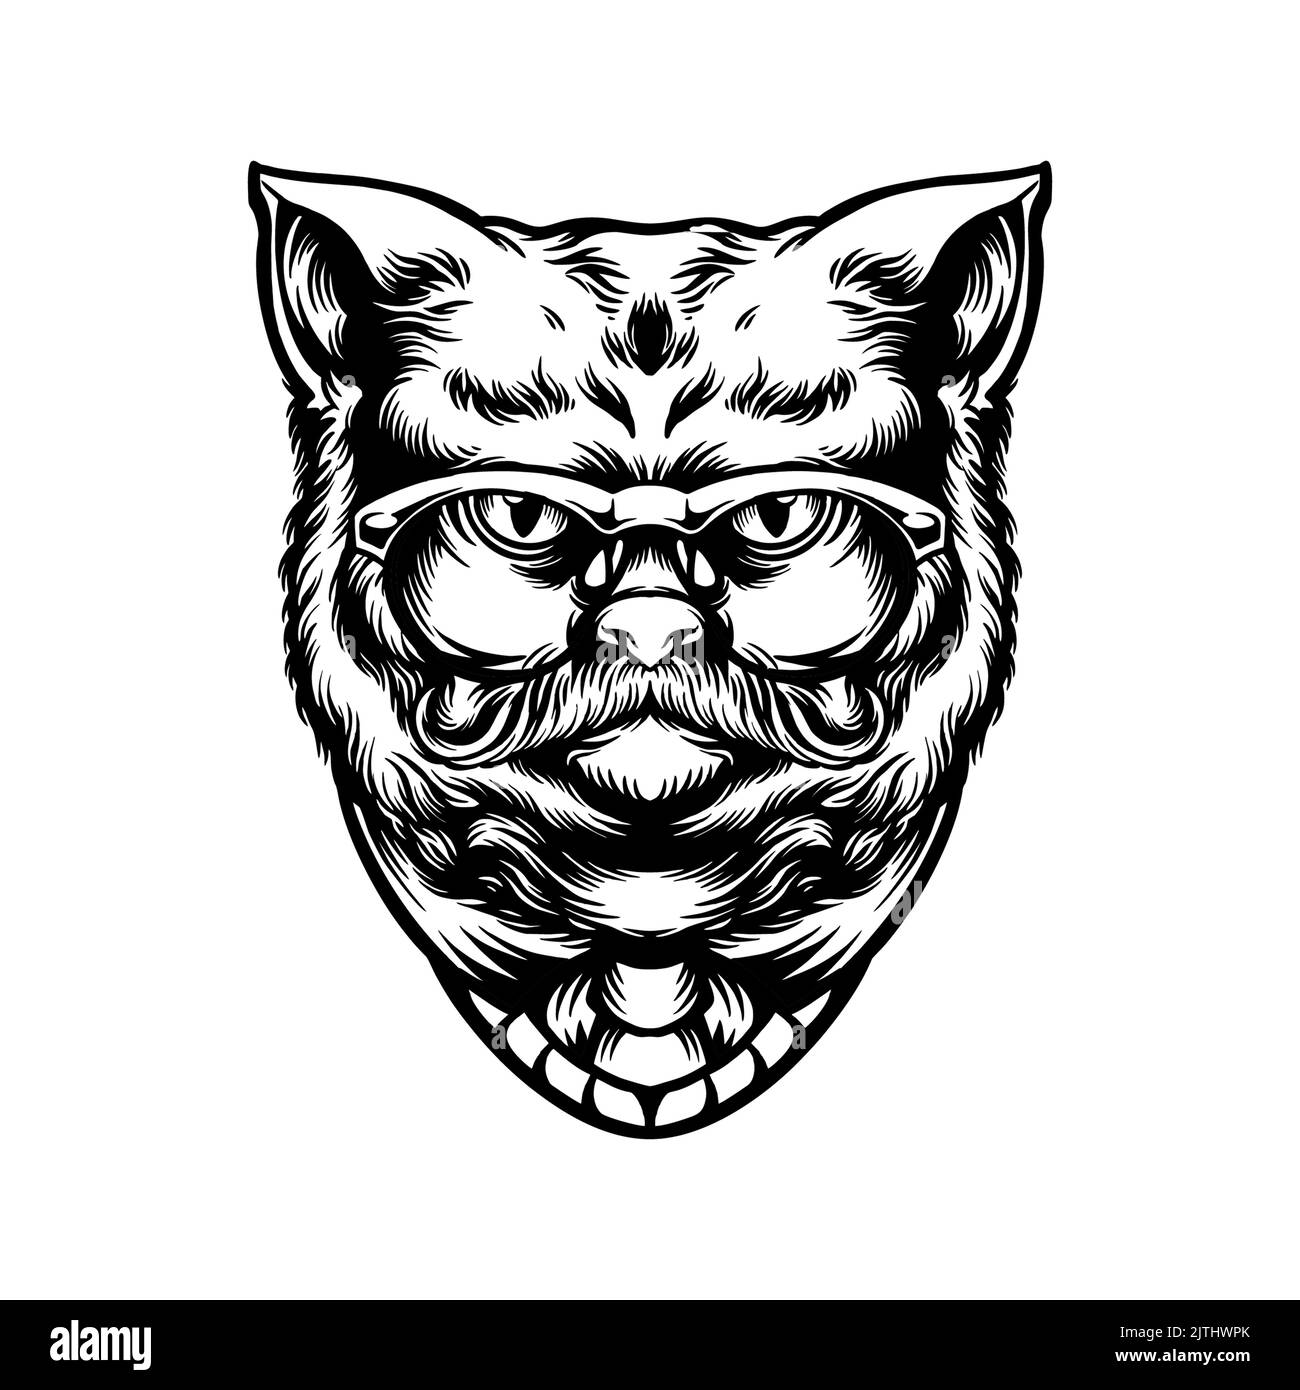 Livre de coloriage animal Cool Cat illustrations vectorielles Silhouette pour votre travail logo, t-shirt de mascotte, autocollants et étiquettes, affiche, plat Banque D'Images